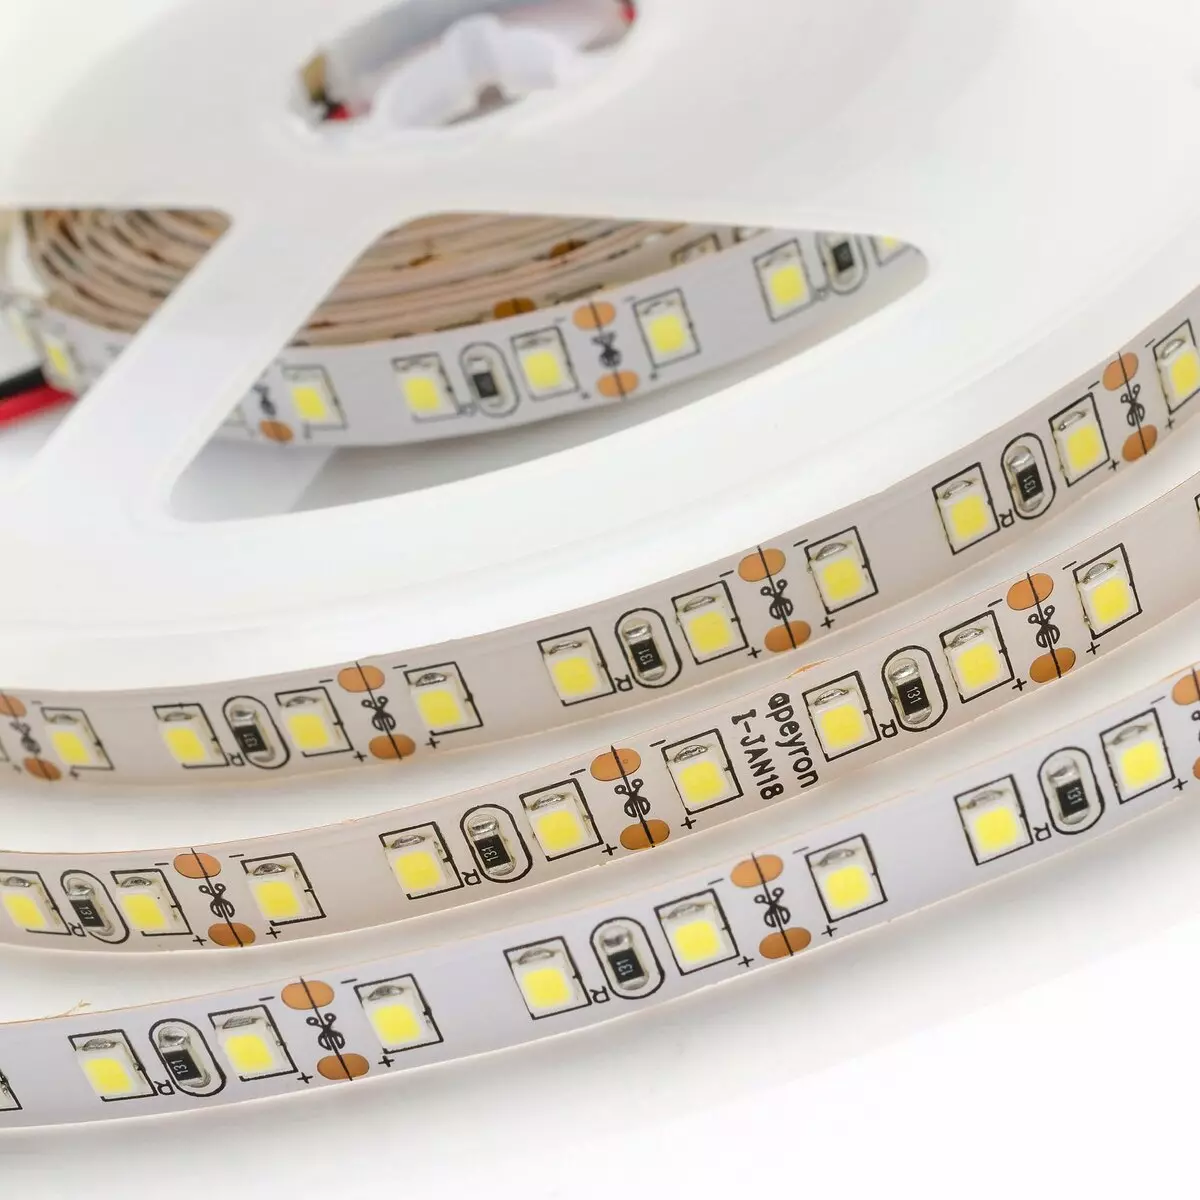 Đèn LED ruy băng cho nhà bếp (62 ảnh): Băng tự dính 220 V. Những gì băng chọn để chiếu sáng tai nghe nhà bếp? Chiếu sáng ruy băng cho tạp dề 20998_24